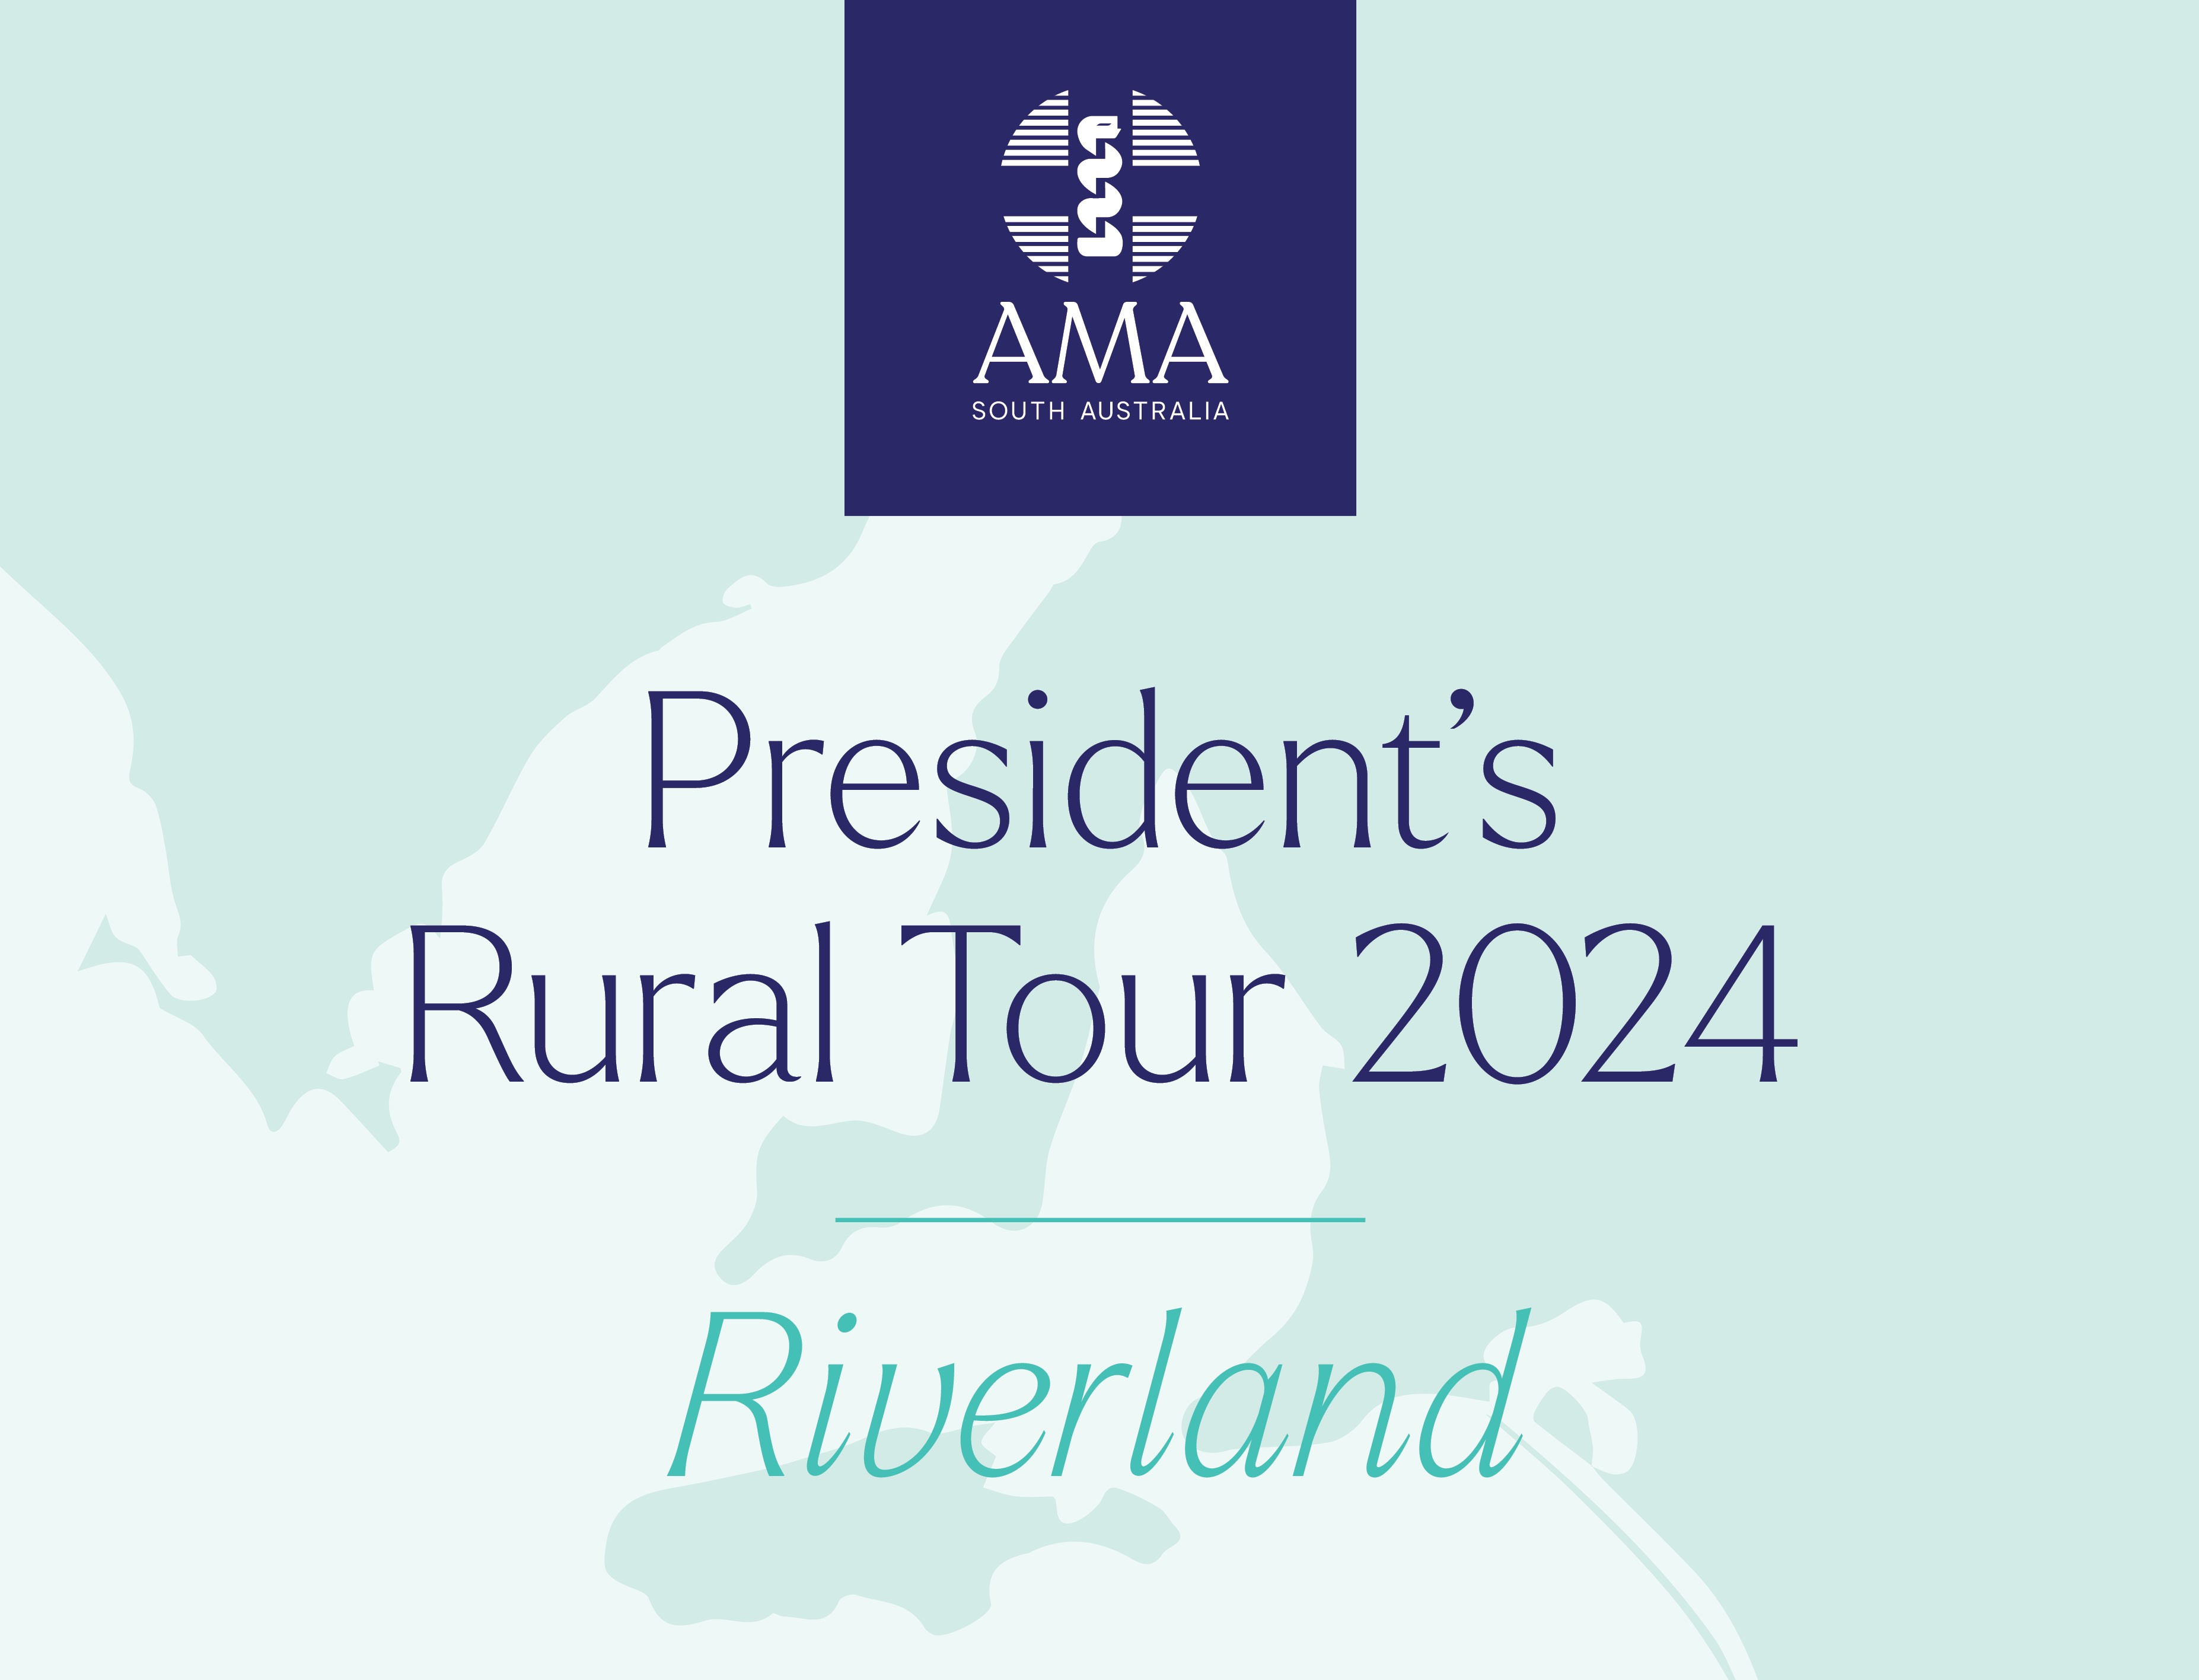 Rural-visit-2024-riverland